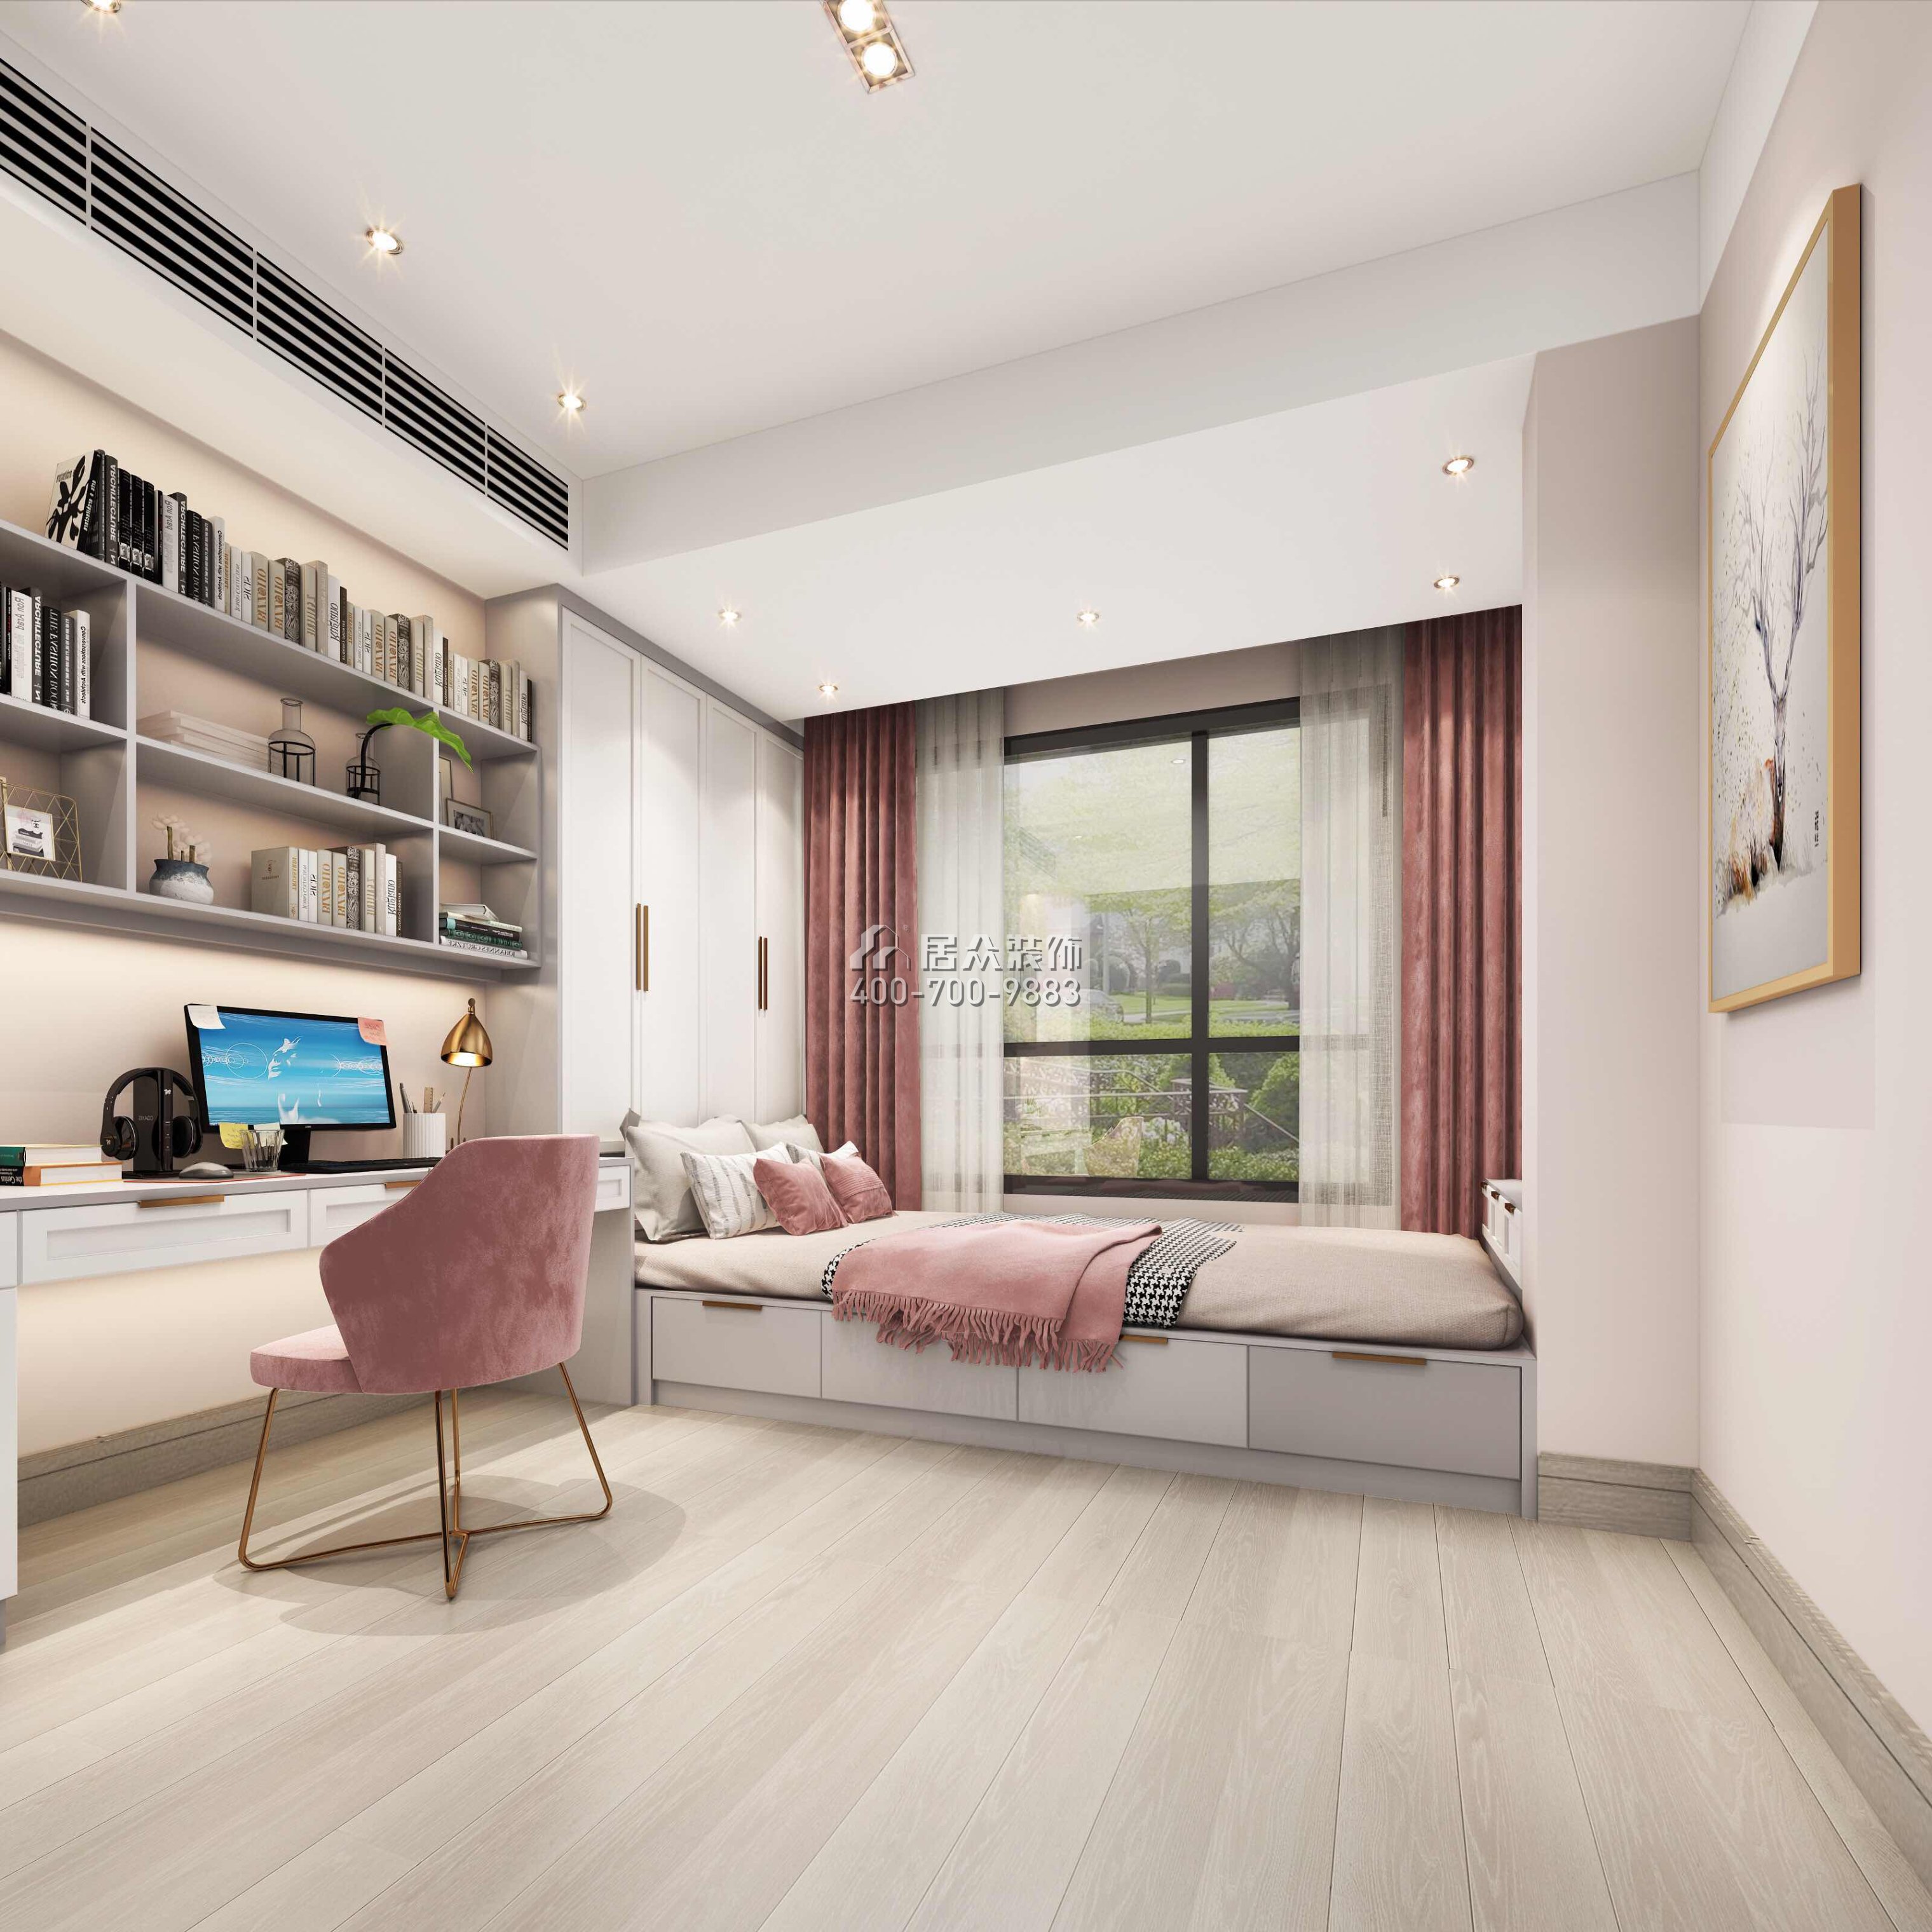 达鑫江滨新城250平方米现代简约风格平层户型卧室书房一体装修效果图